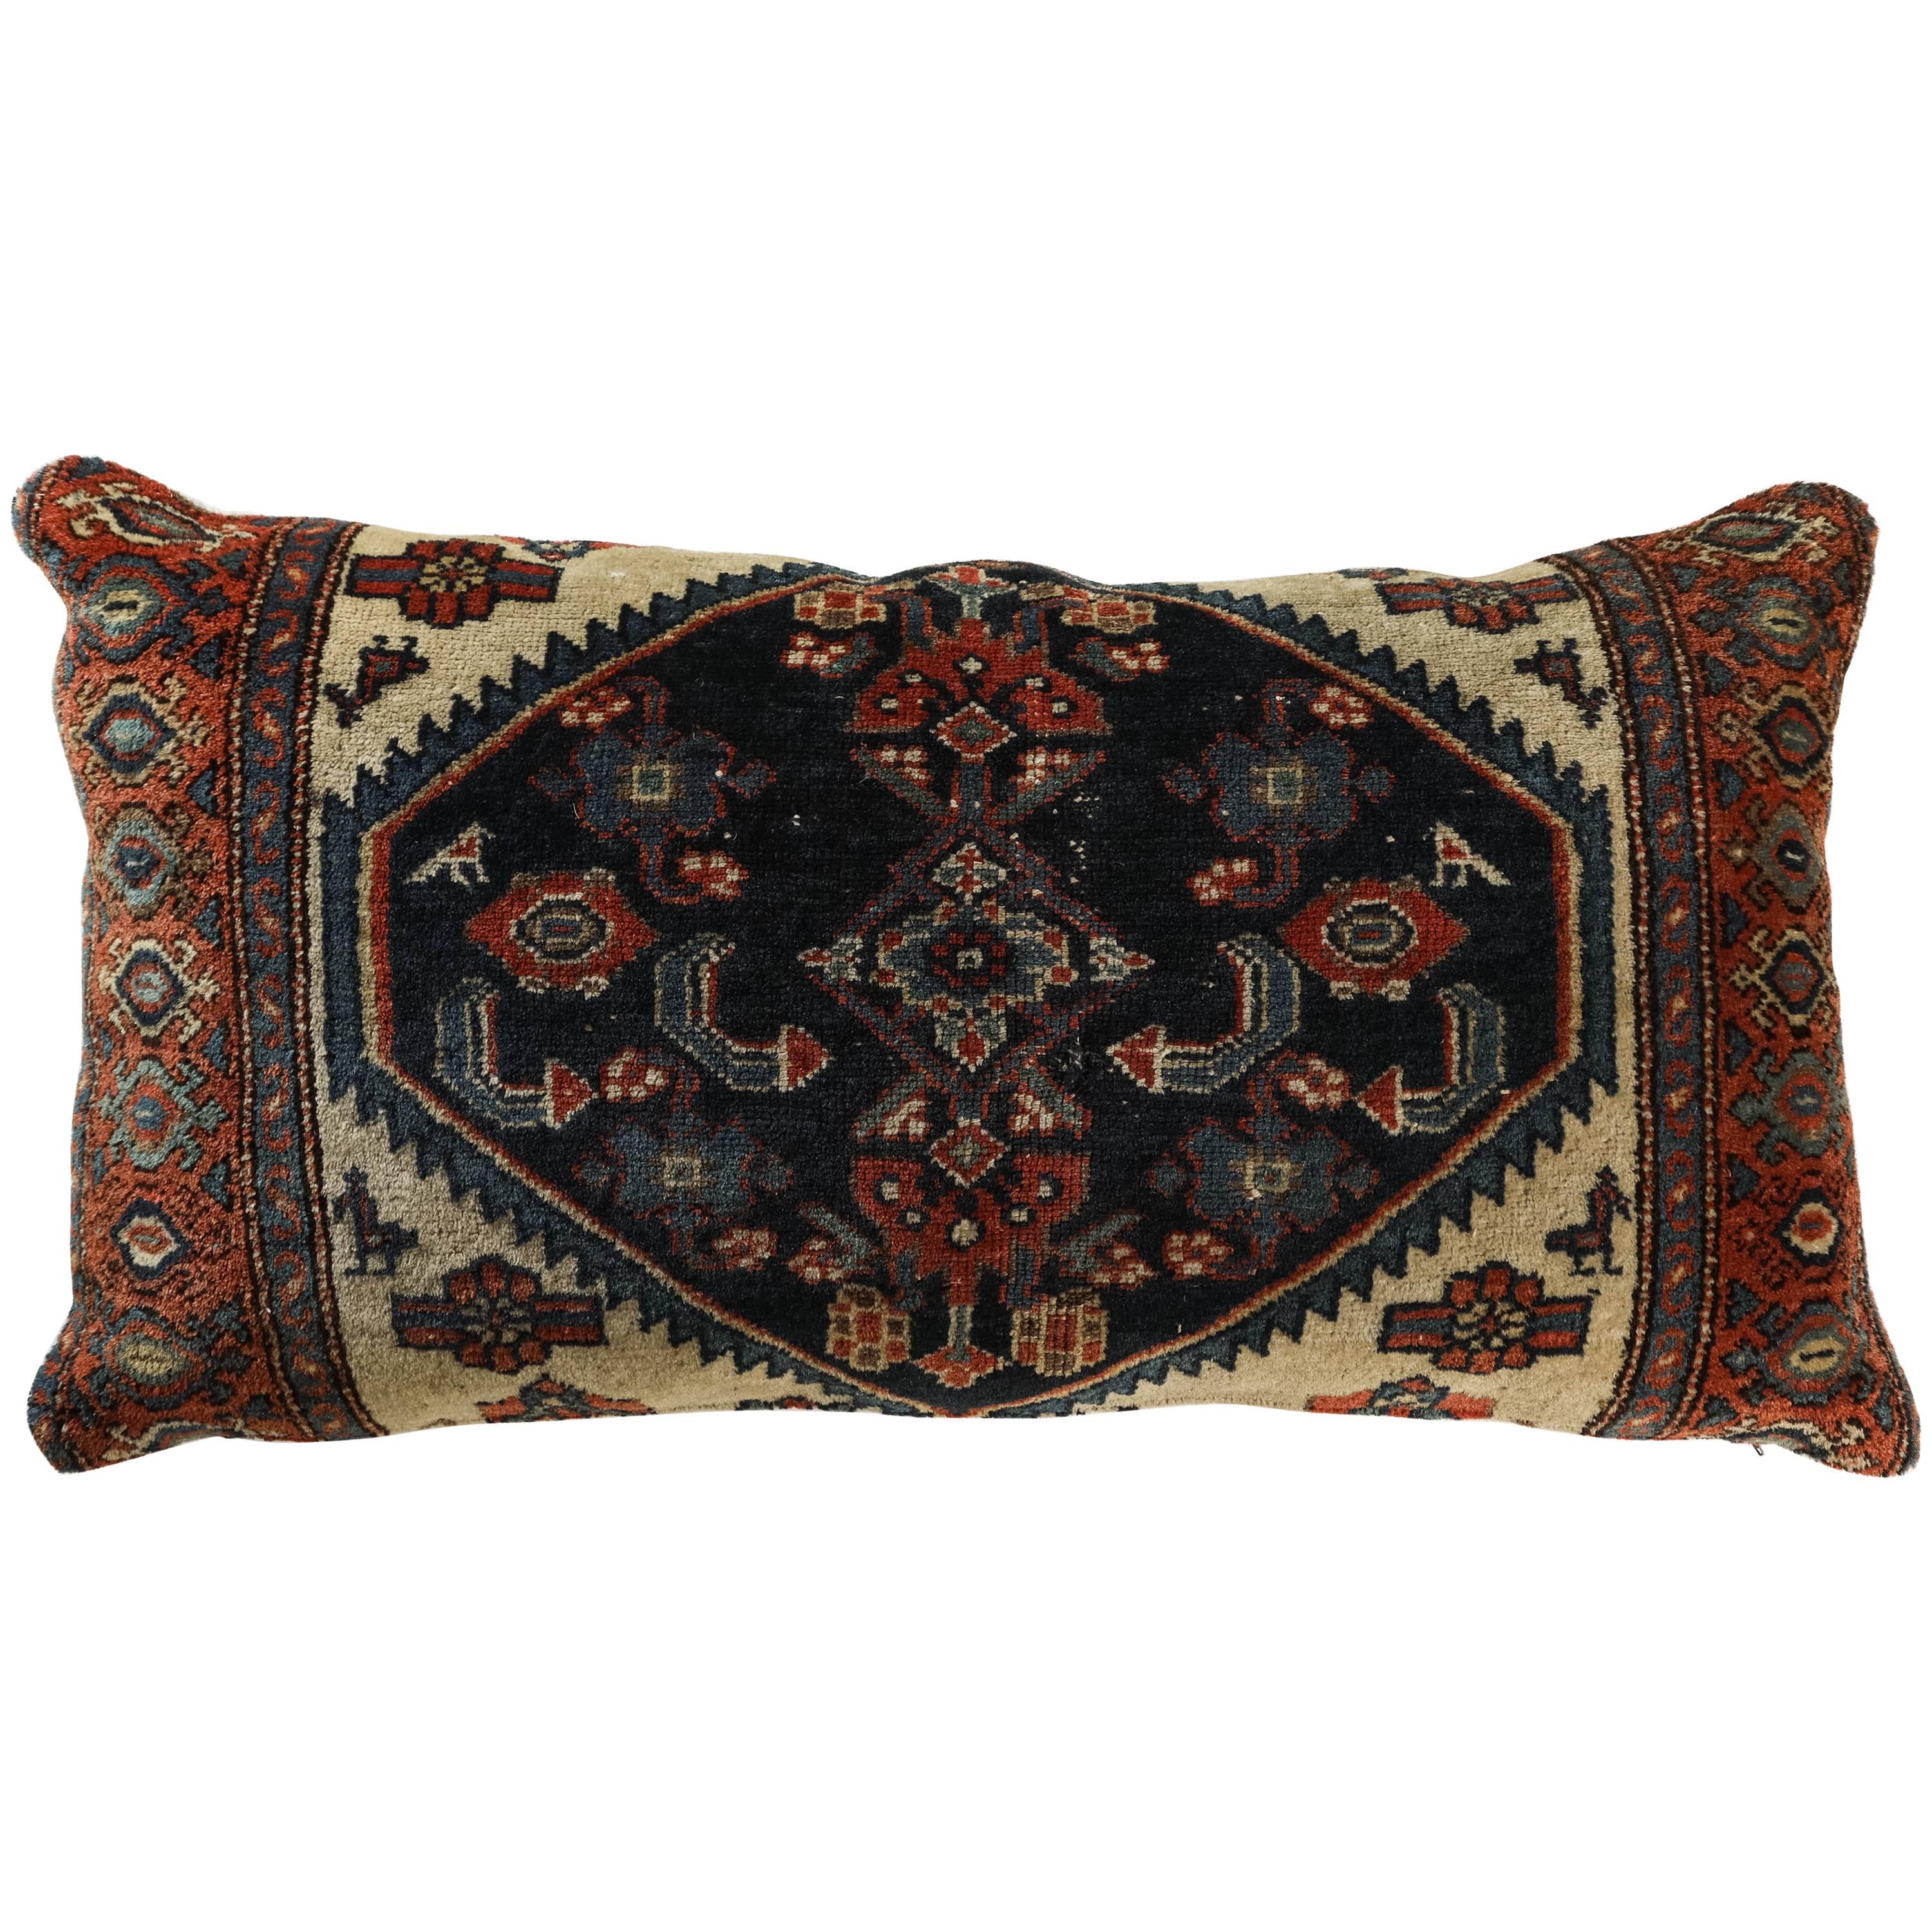 Antique Persian Carpet Pillow For Sale